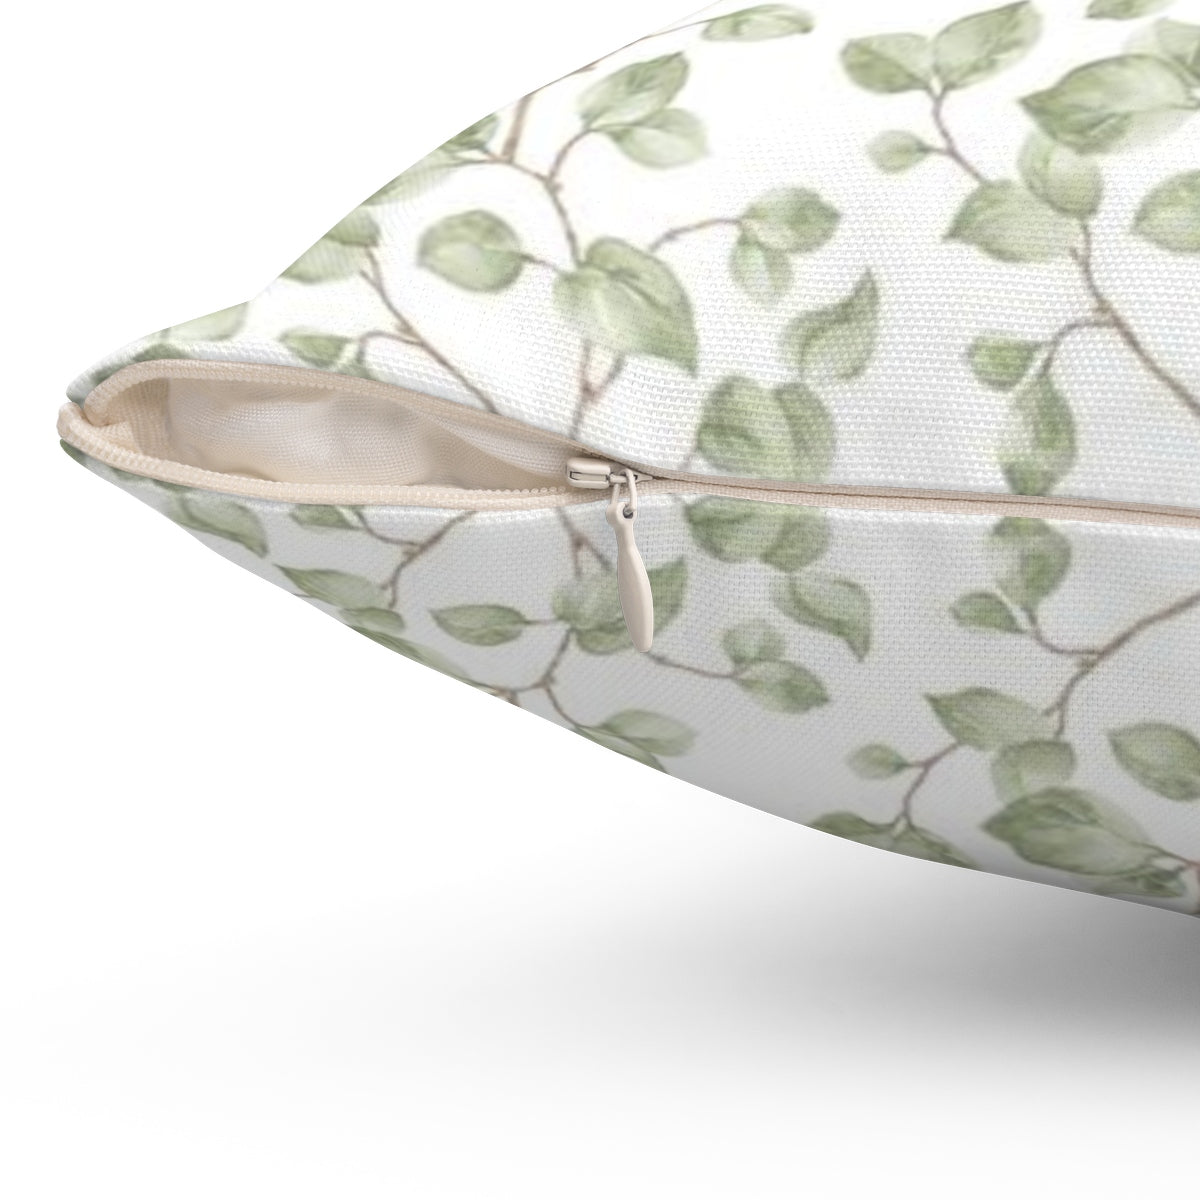 Green leaf accent pillow - Liz Kapiloto Art & Design